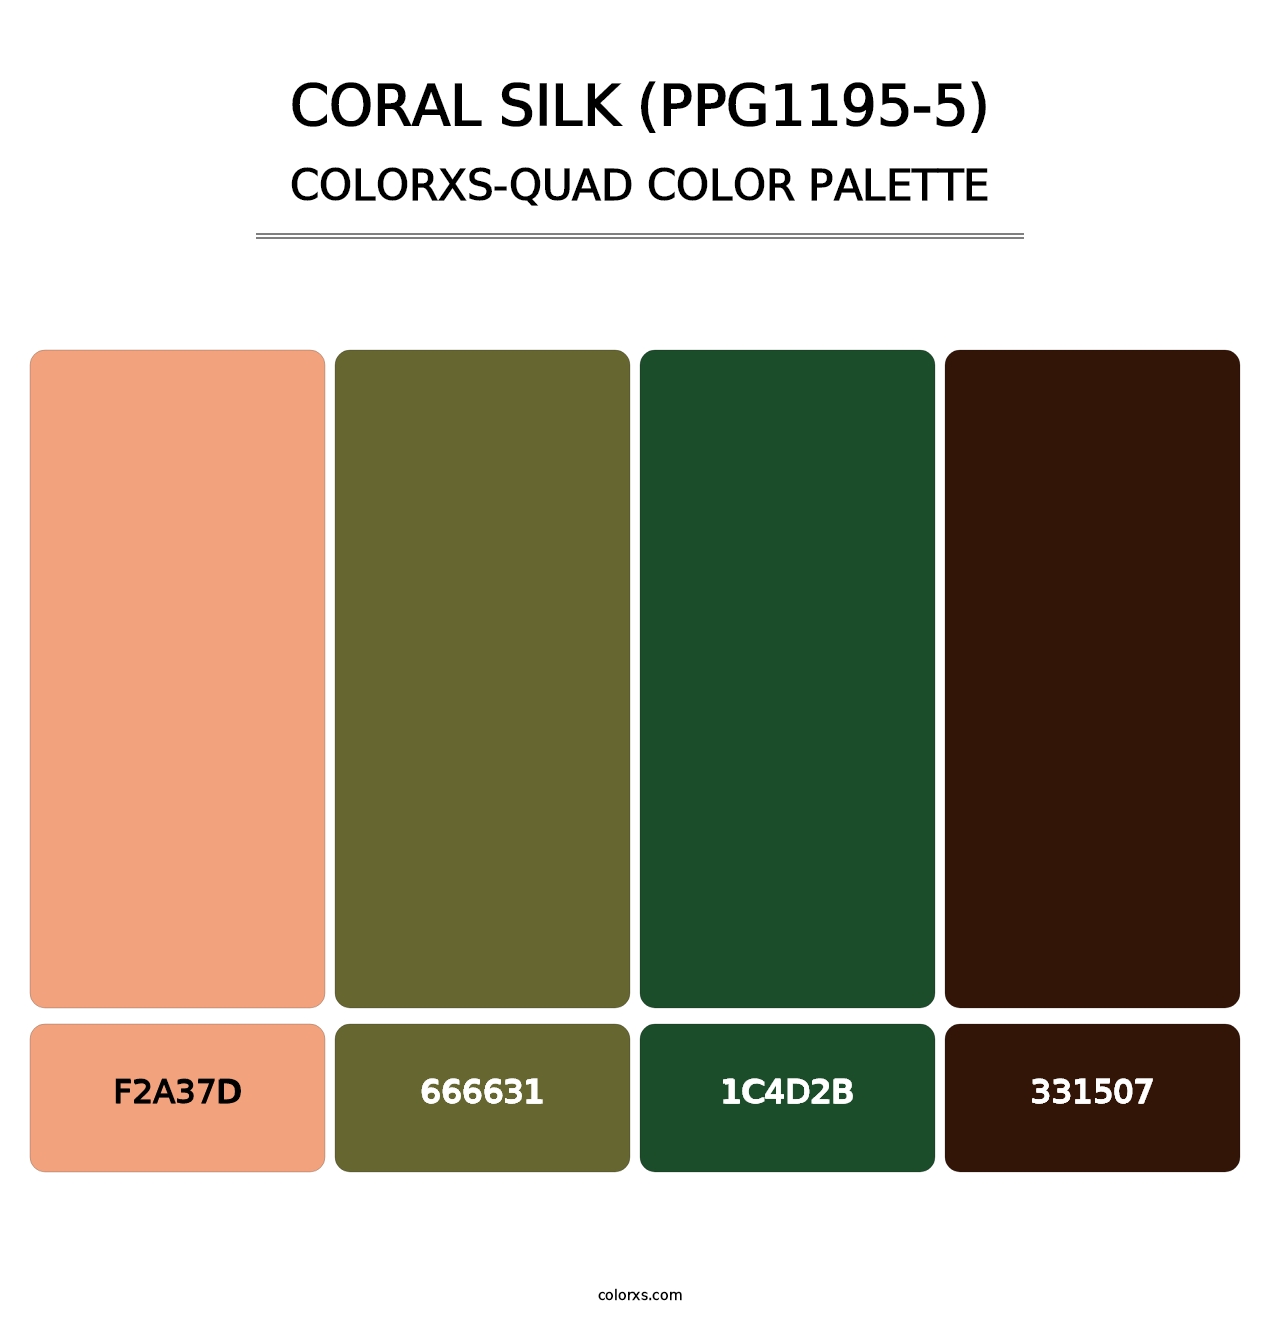 Coral Silk (PPG1195-5) - Colorxs Quad Palette